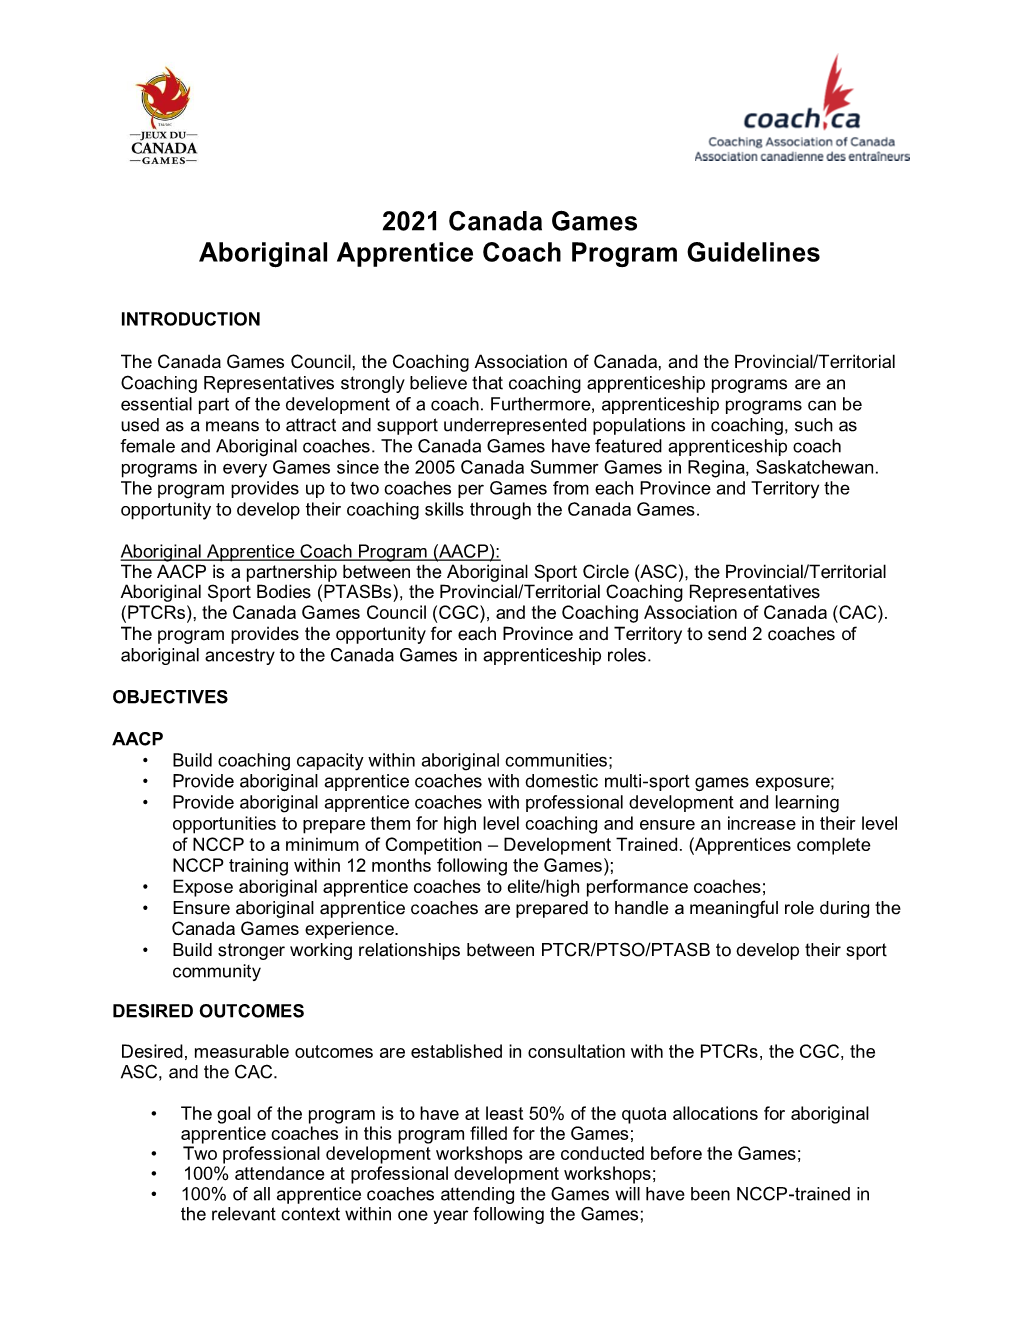 2021 Canada Games Aboriginal Apprentice Coach Program Guidelines